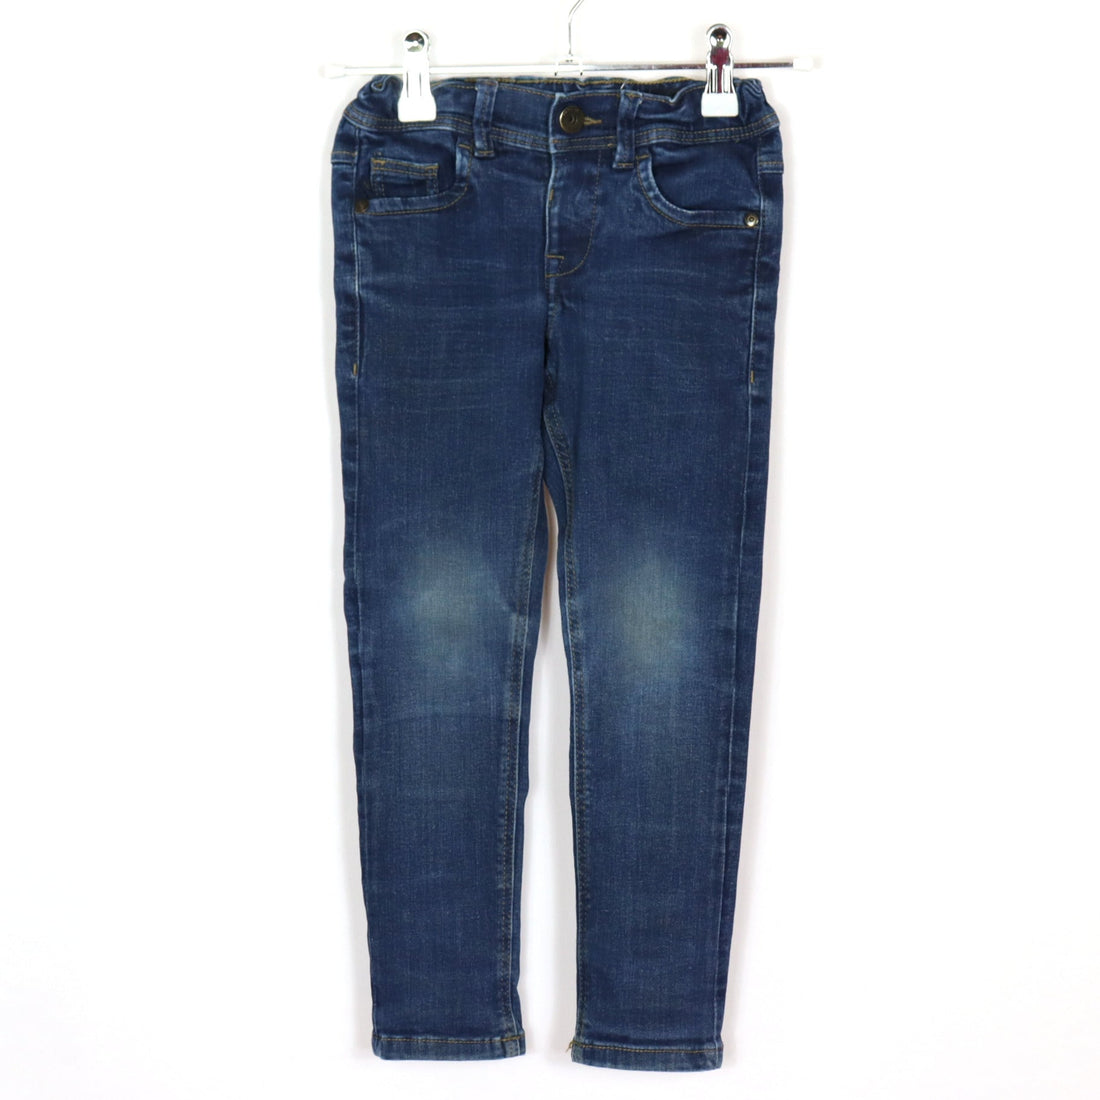 Jeans - Name it - Slim - 110 - blau - Boy - sehr guter Zustand